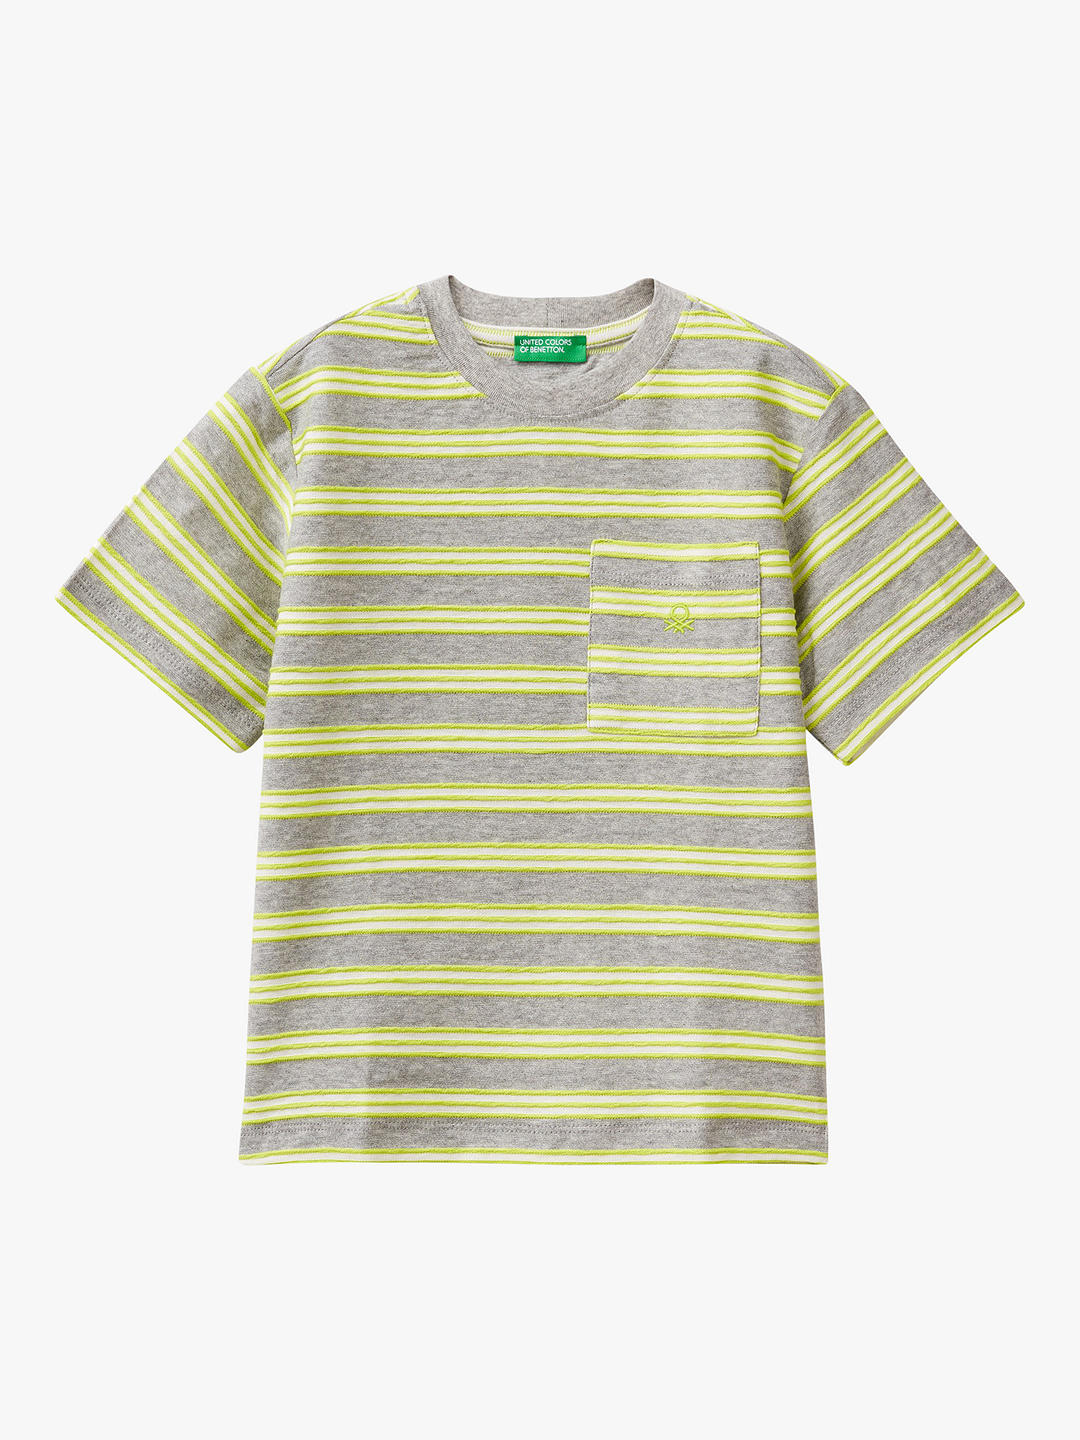 Benetton Kids' Logo Stripe Pocket Detail T-Shirt, Melange/Multi